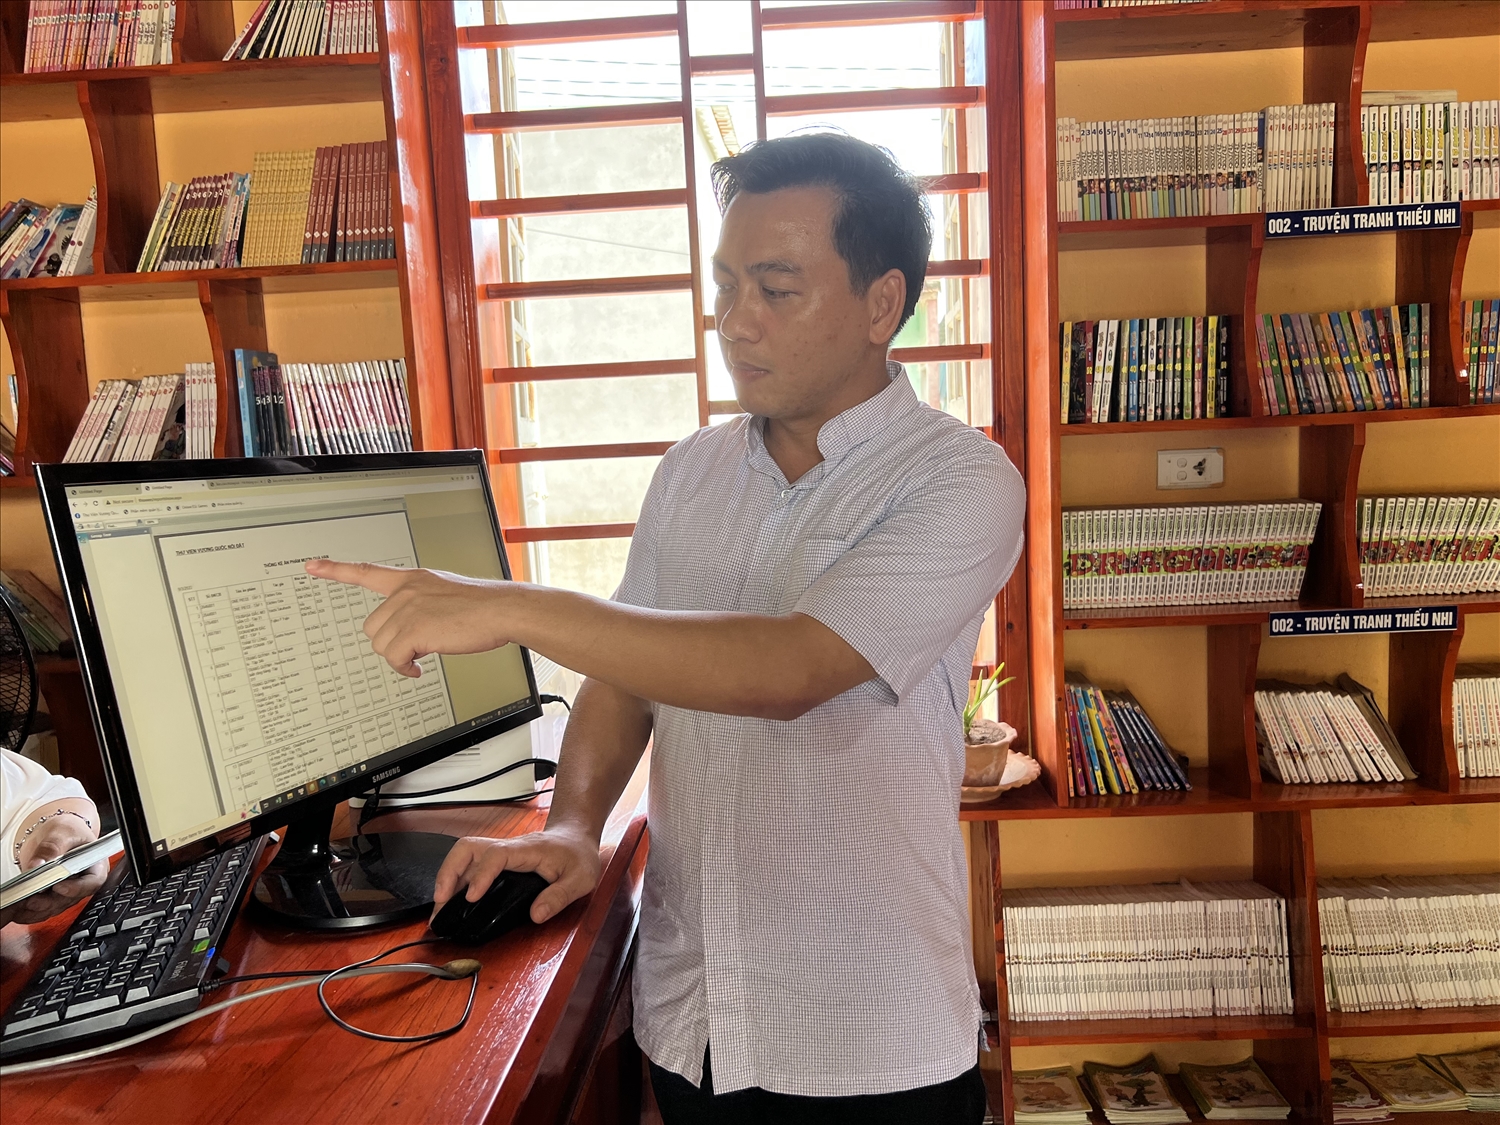 Linh mục Nguyễn Văn Công giới thiệu phần mềm quản lí thư viện